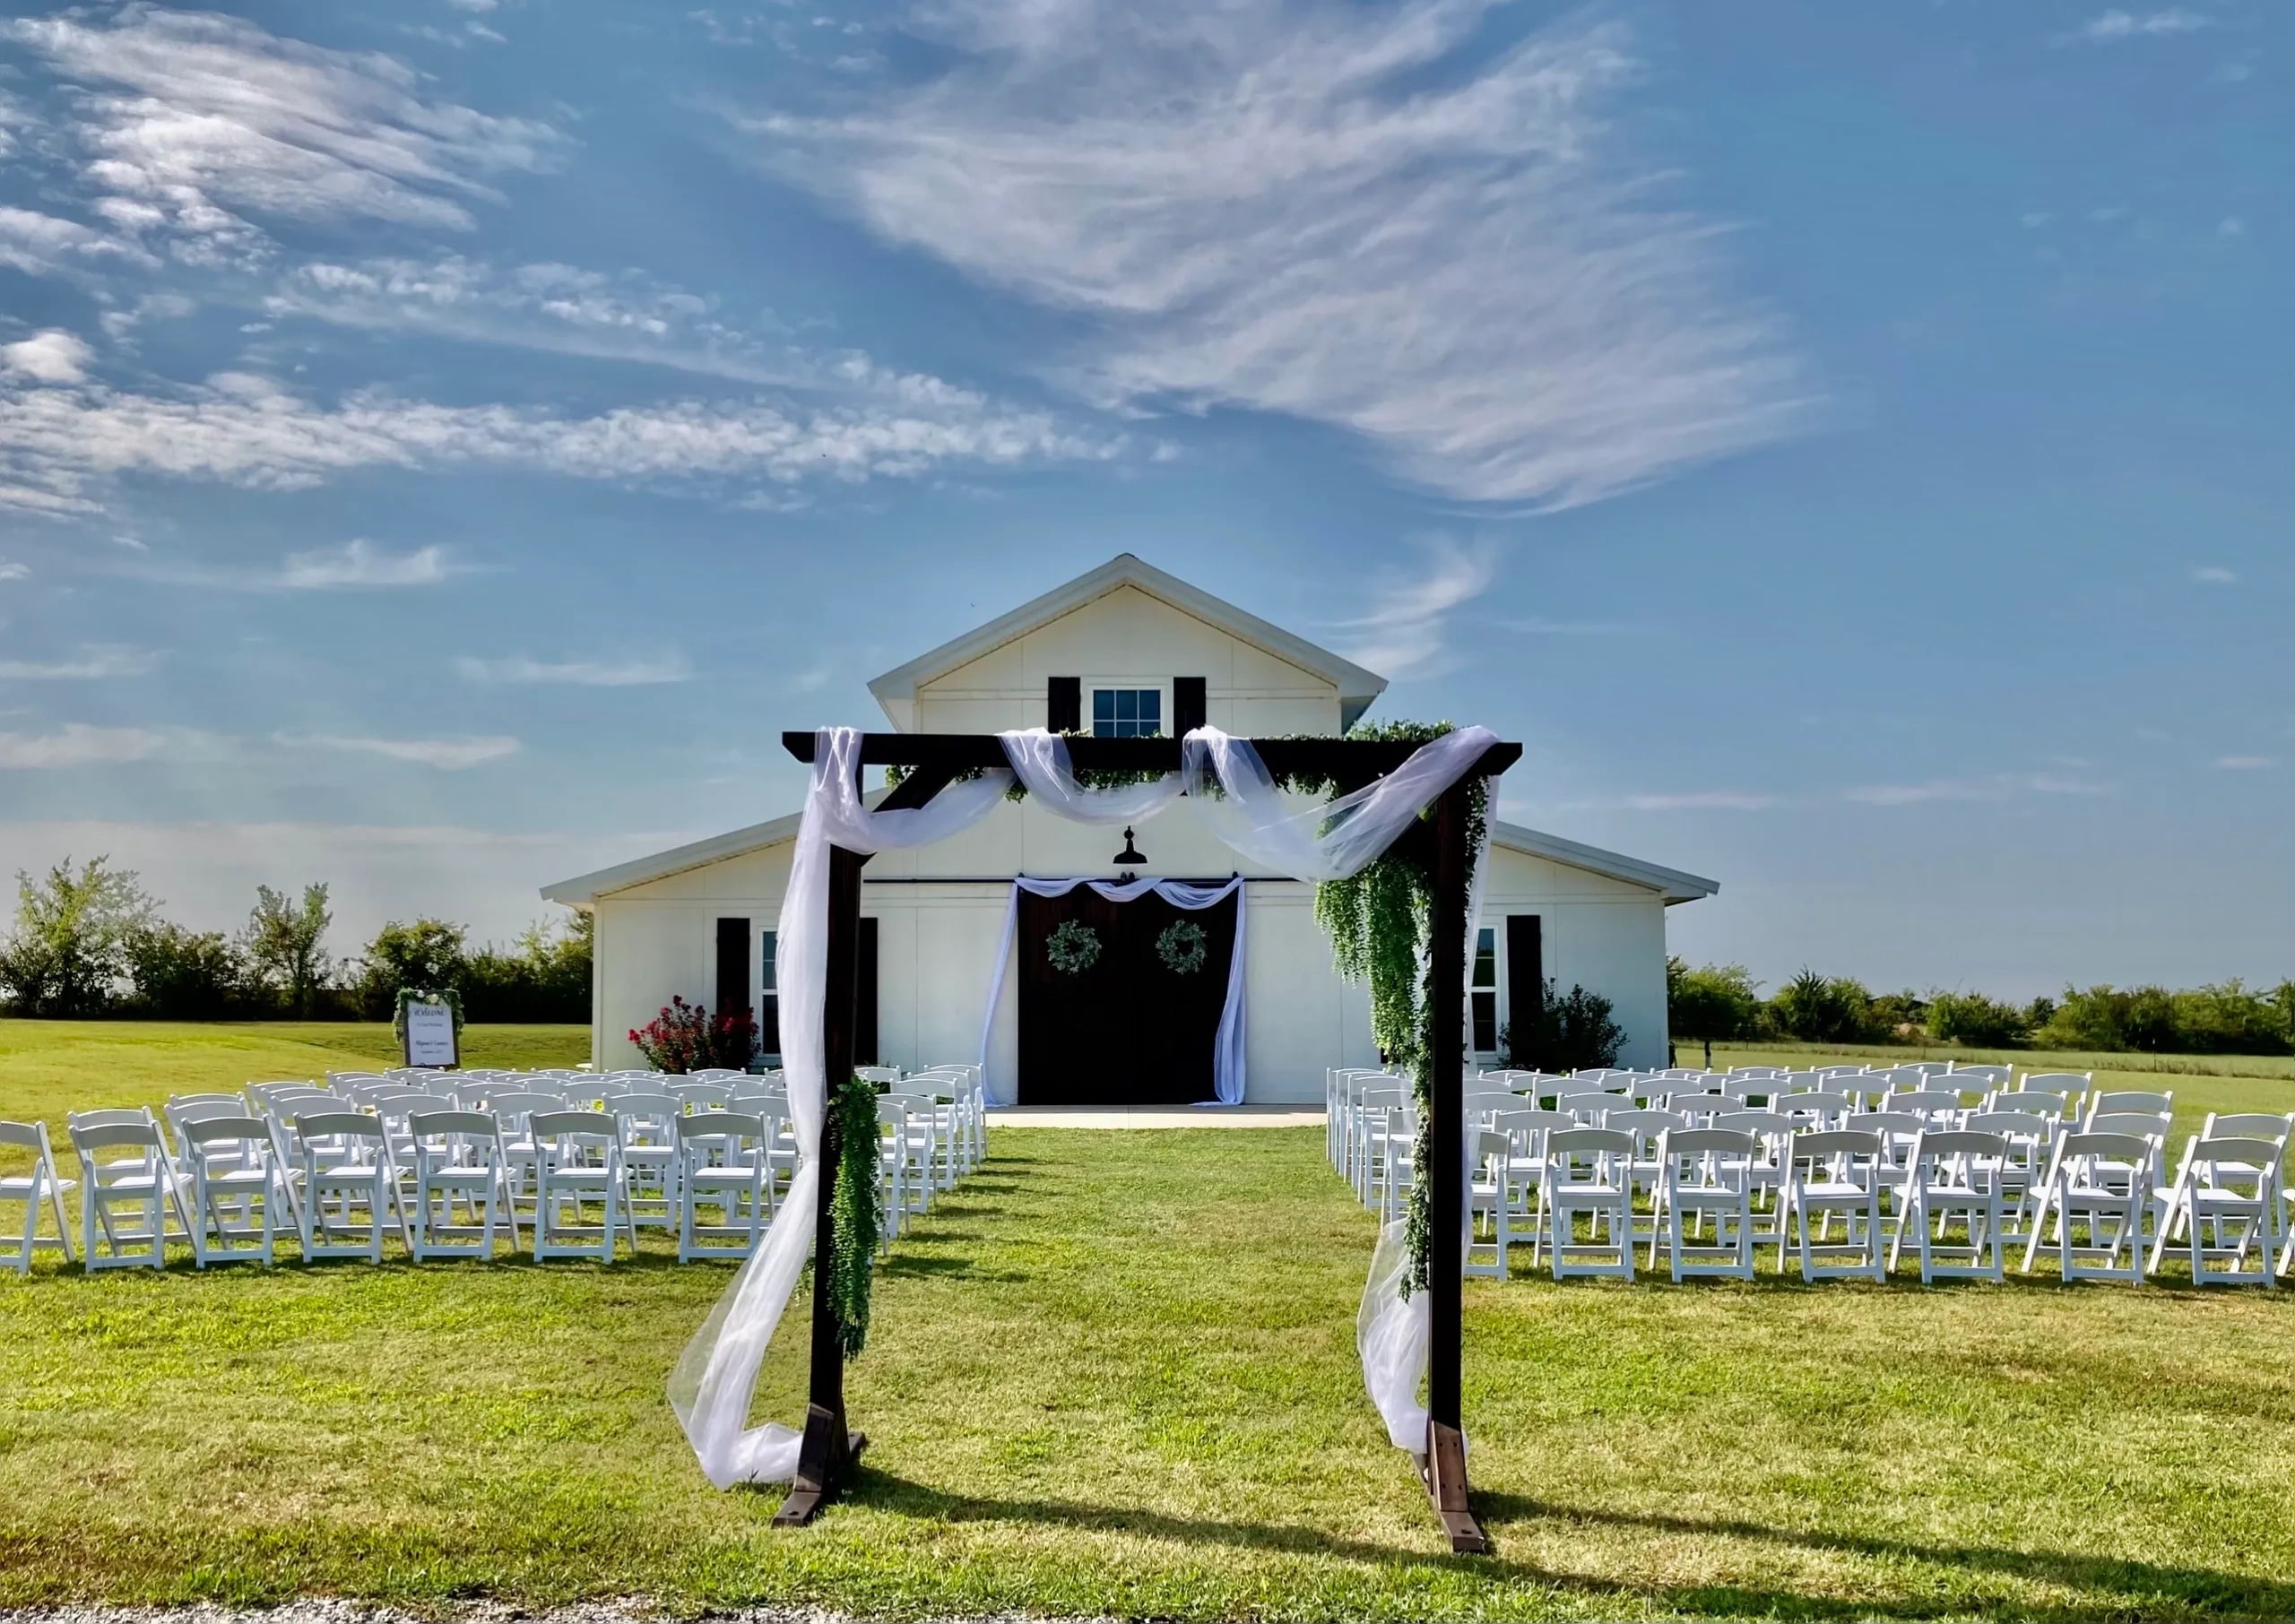 Huckleberry Hill Barn outdoor wedding venues in Oklahoma